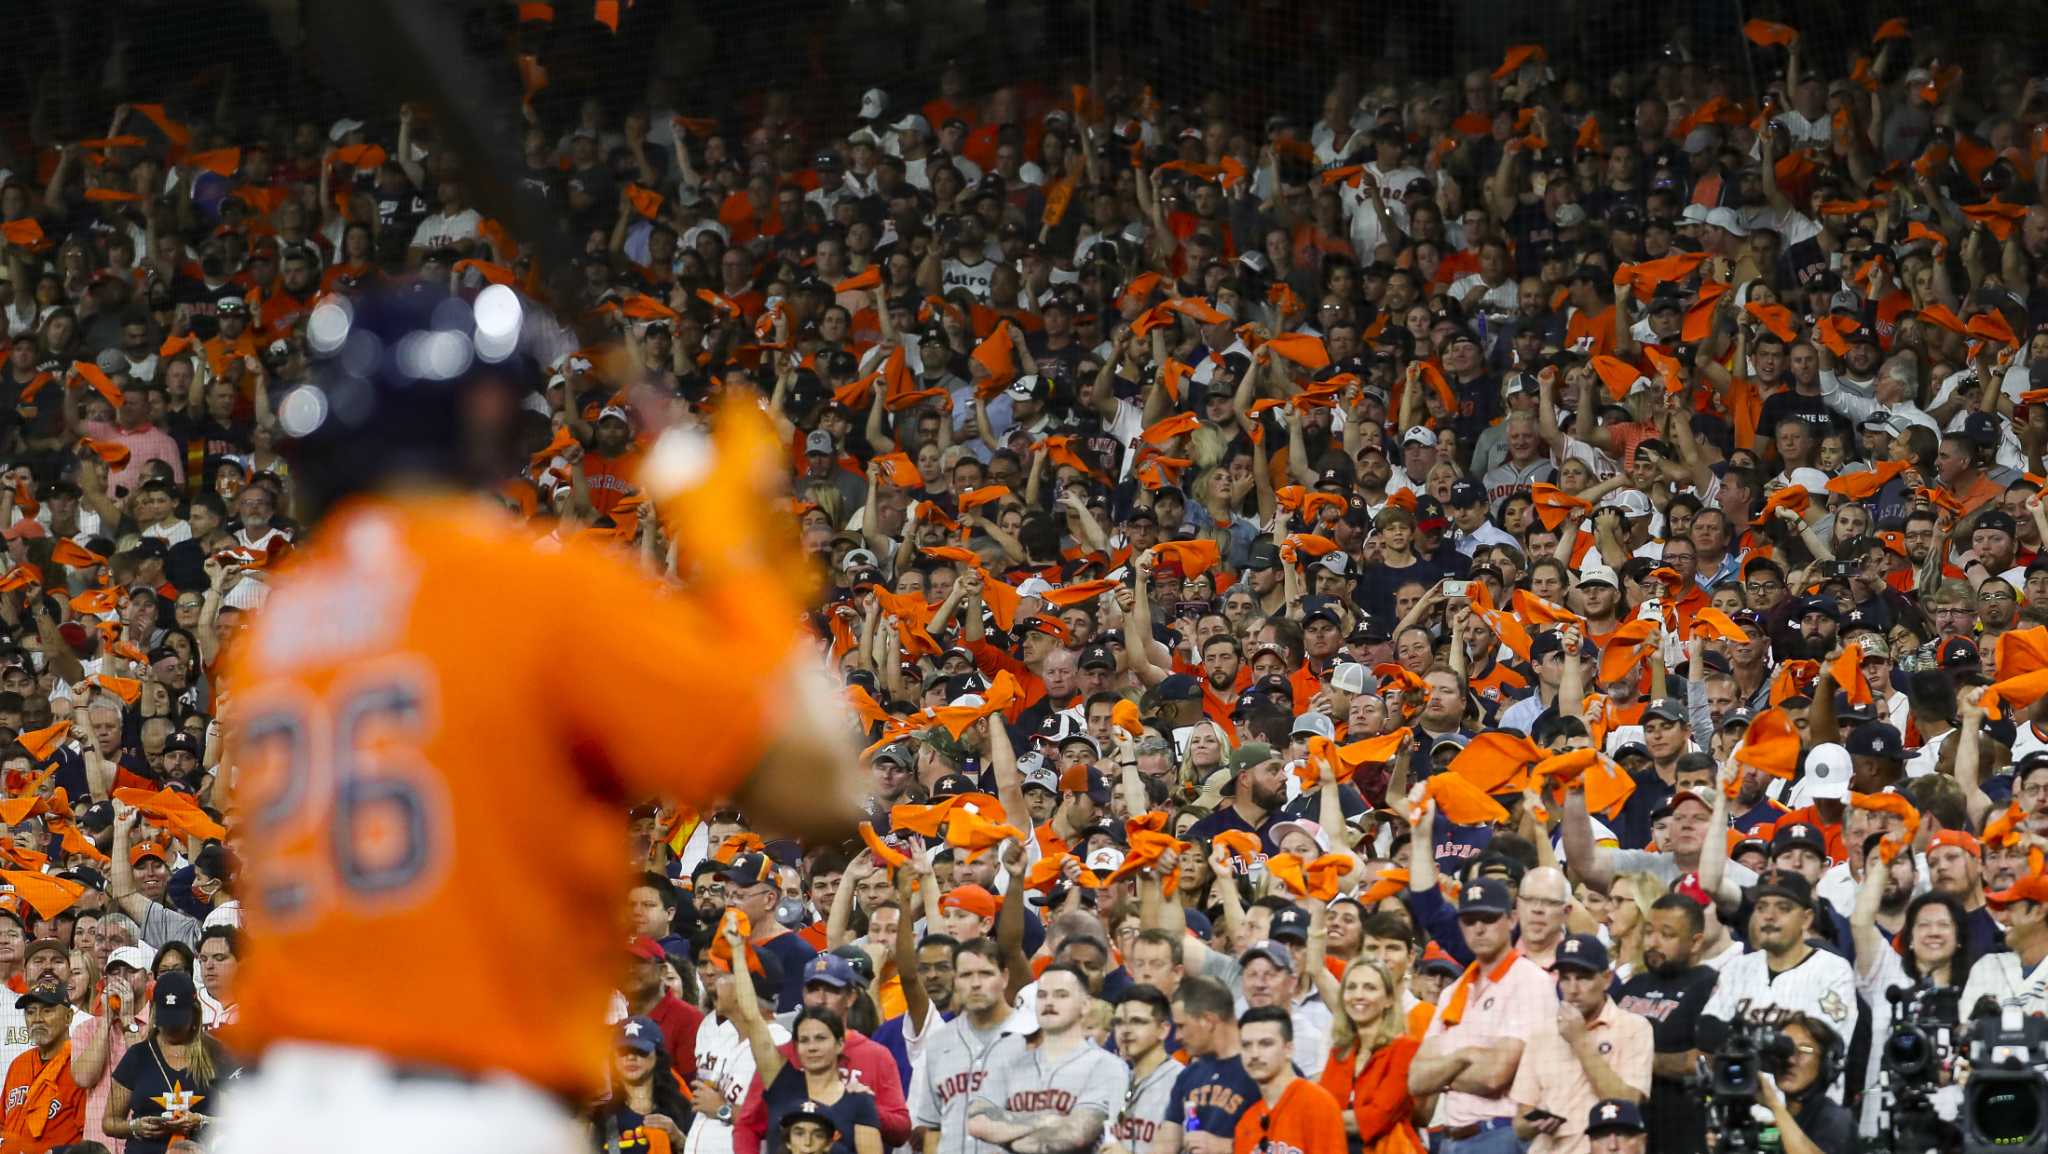 Houston Astros - Ten thousand fans will take home an orange Yuli